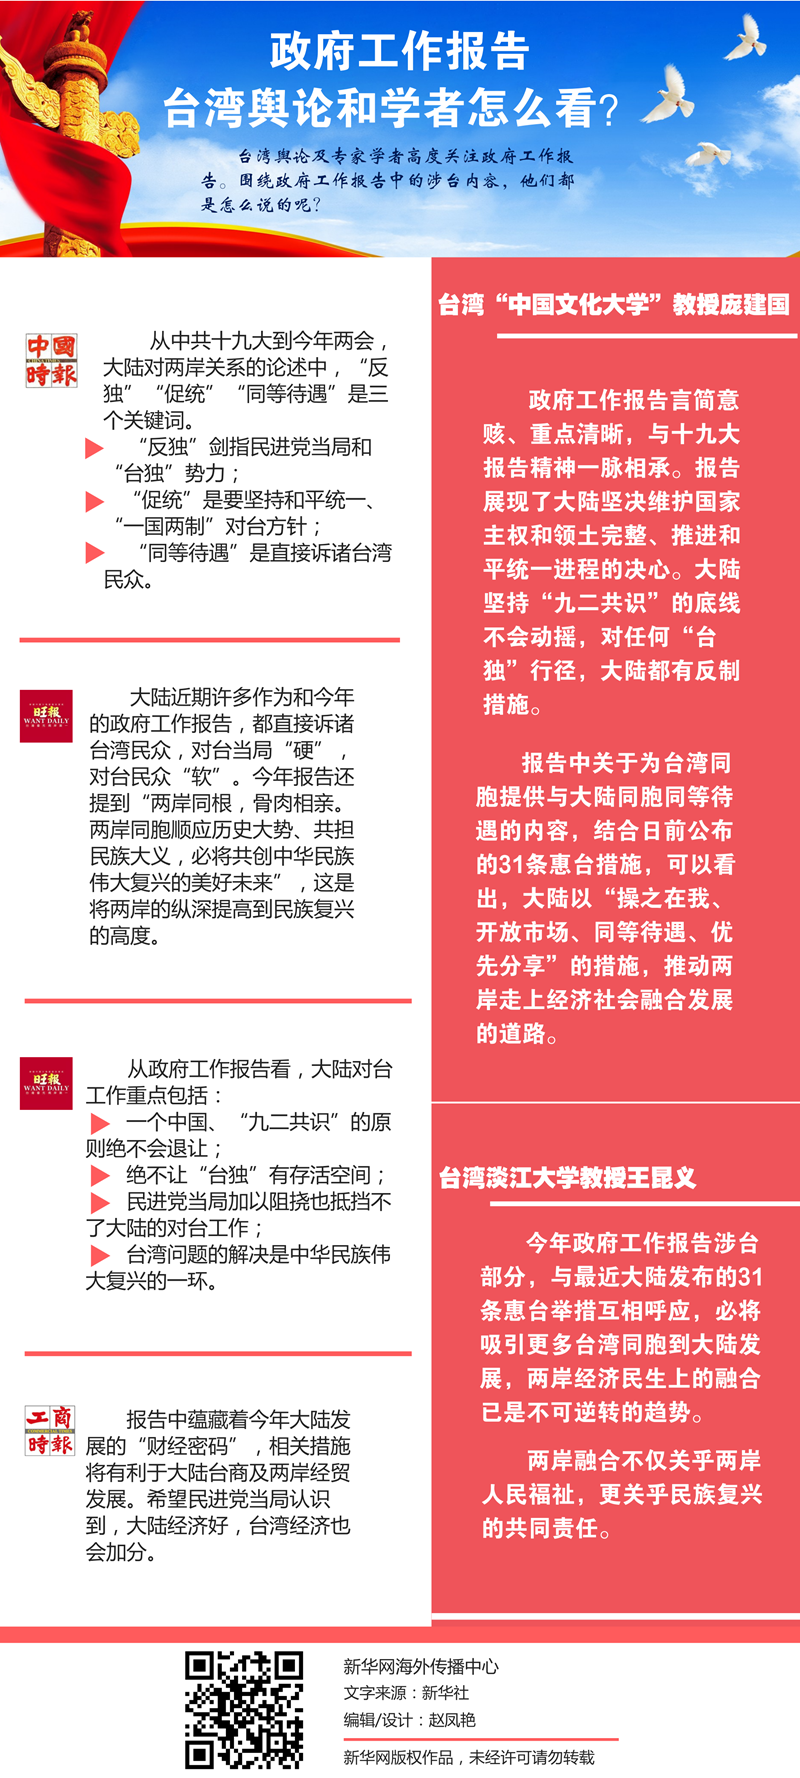 政府工作报告涉台内容 台湾舆论和专家怎么看？